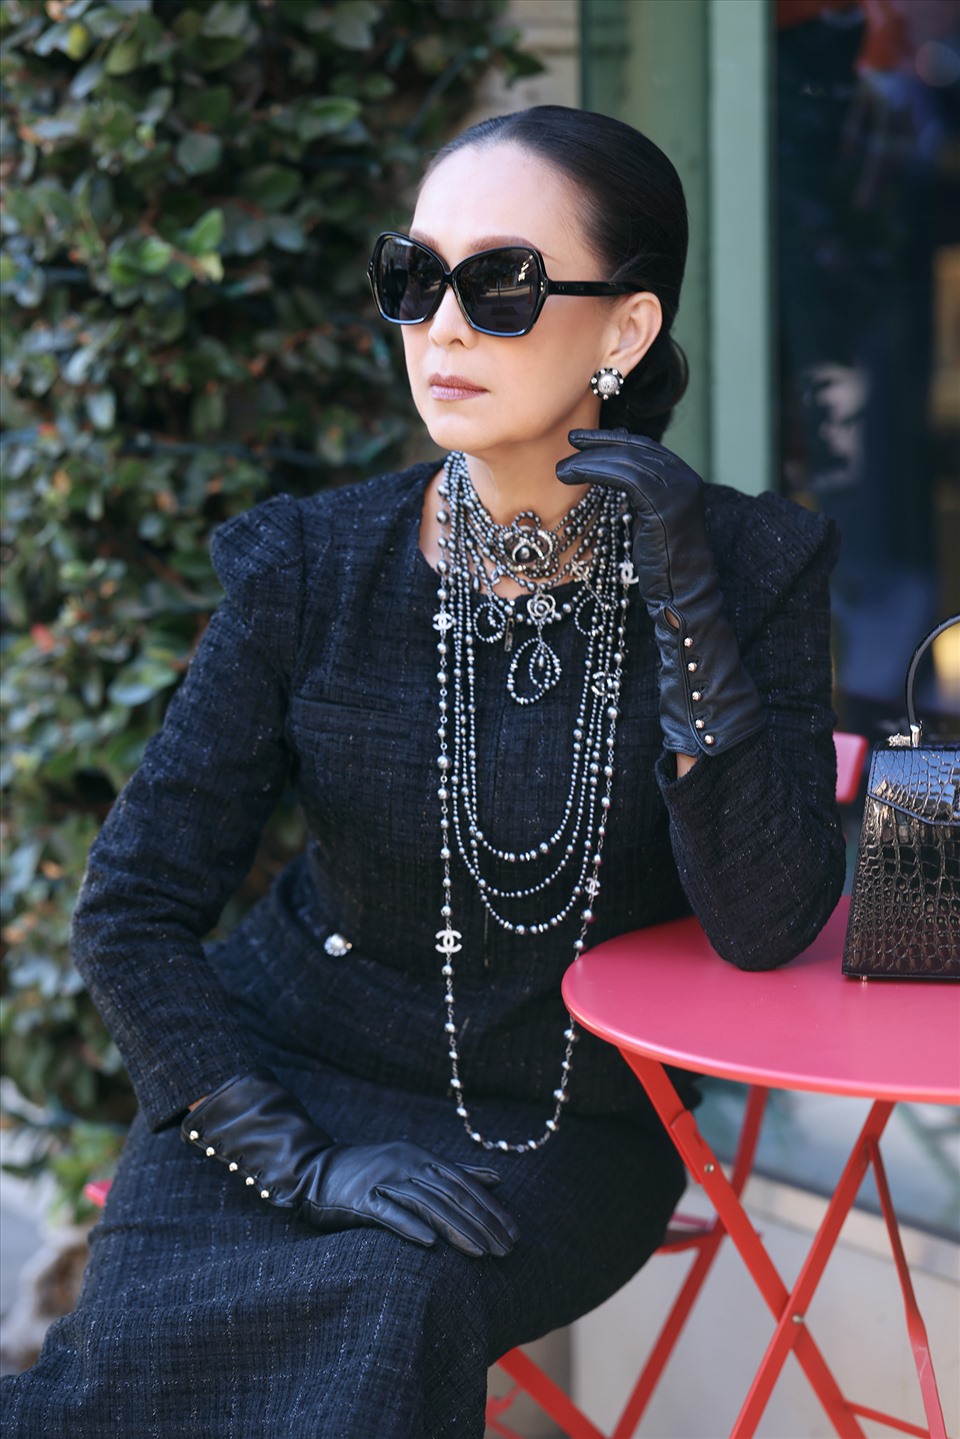 “Nữ hoàng ảnh lịch” Diễm My sang trọng trong bộ đầm đen của nhà thiết kế Đỗ Mạnh Cường. Ảnh: Vinh Phan